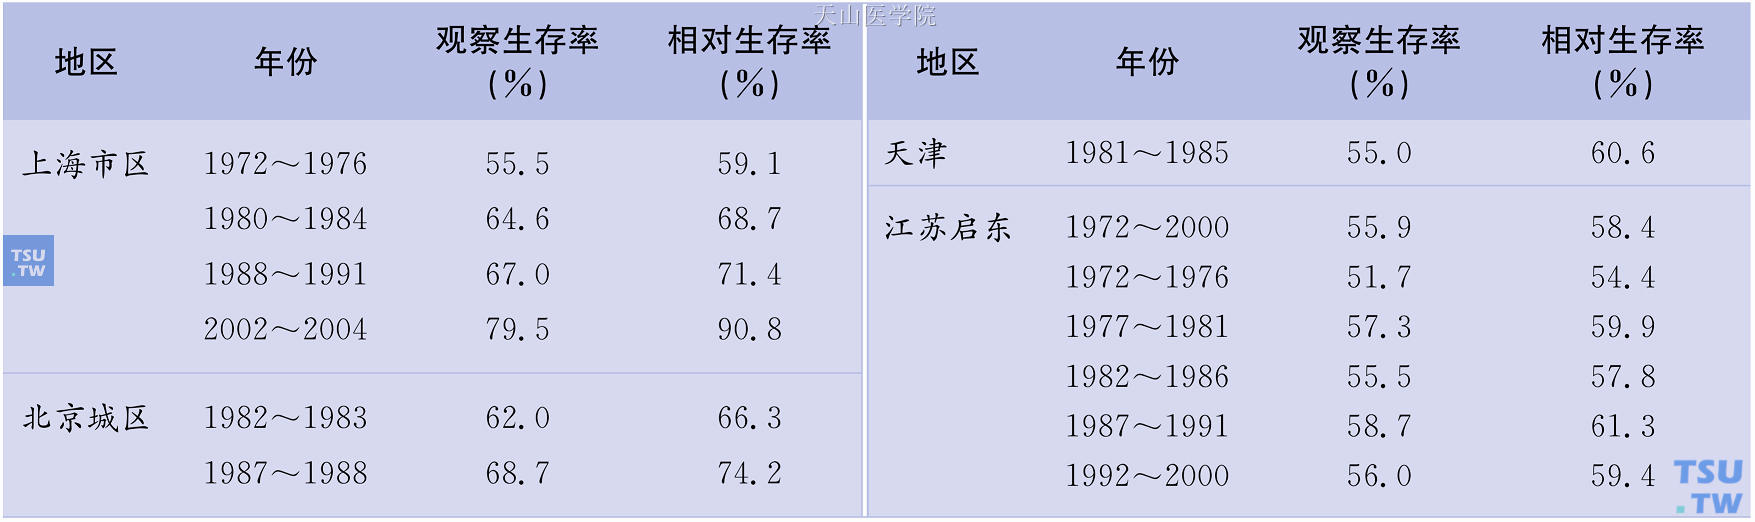 中国部分地区乳腺癌5年生存率及其变化